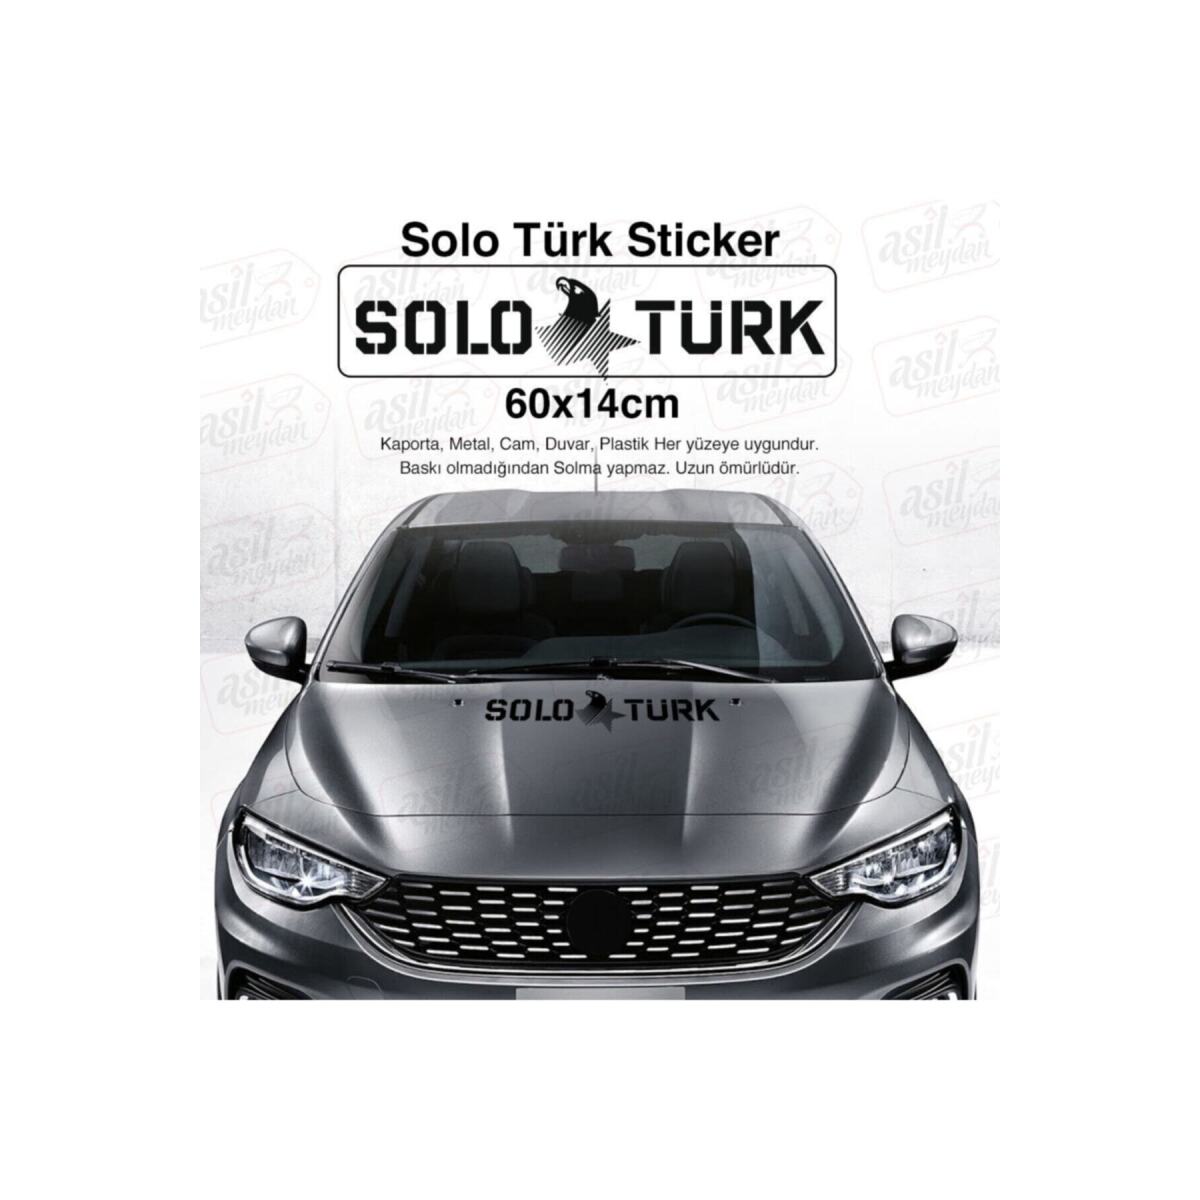 Solo Türk Yazılı Kartal Yıldız Siyah Oto Sticker, Araba, Etiket, Çıkartma, Modifiye, Tuning, Arma